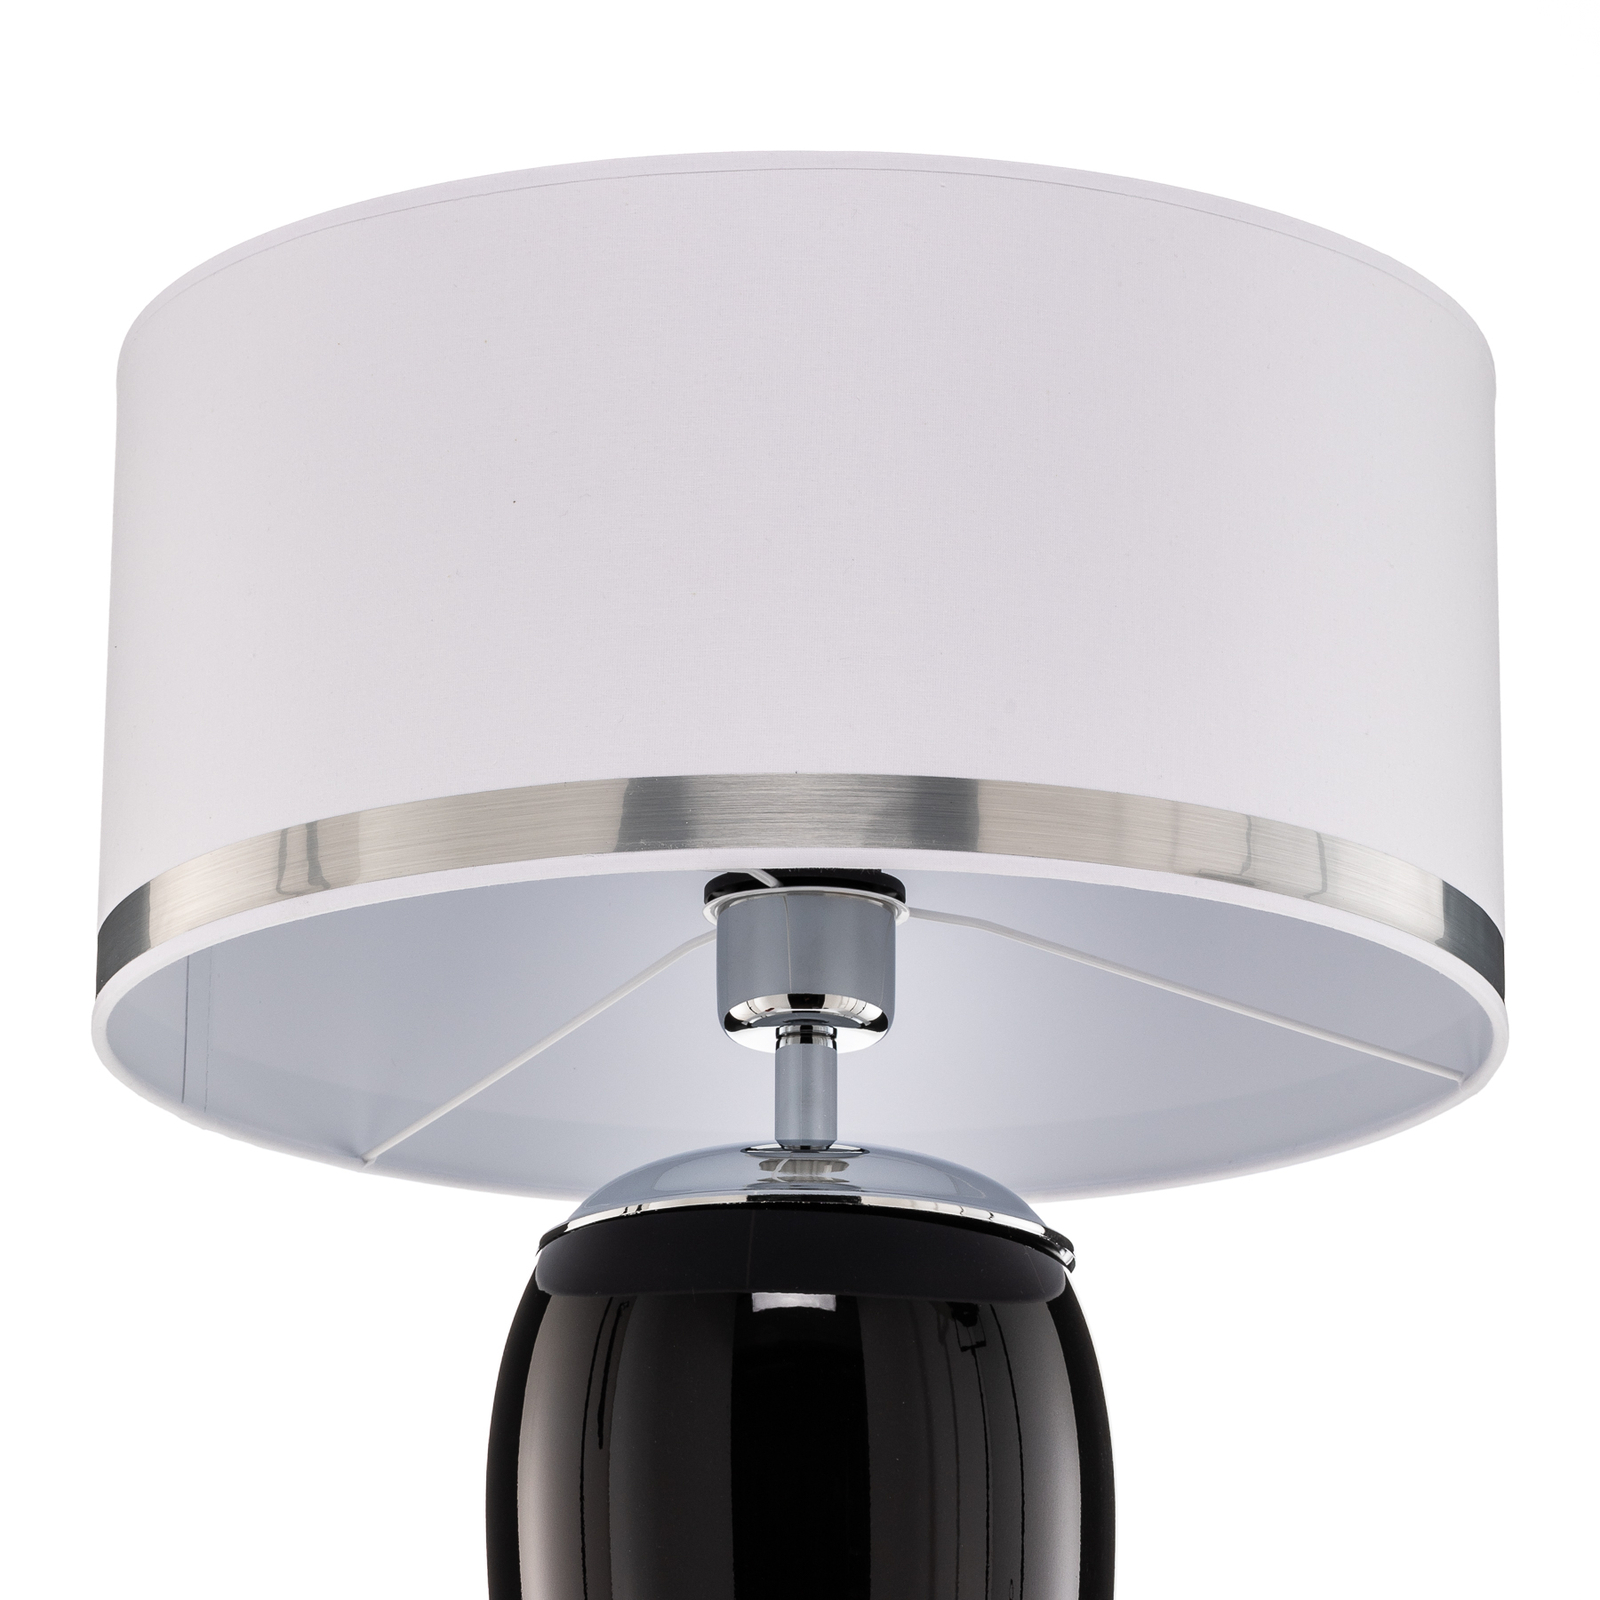 Bordlampe Lund i hvit og svart, høyde 70 cm